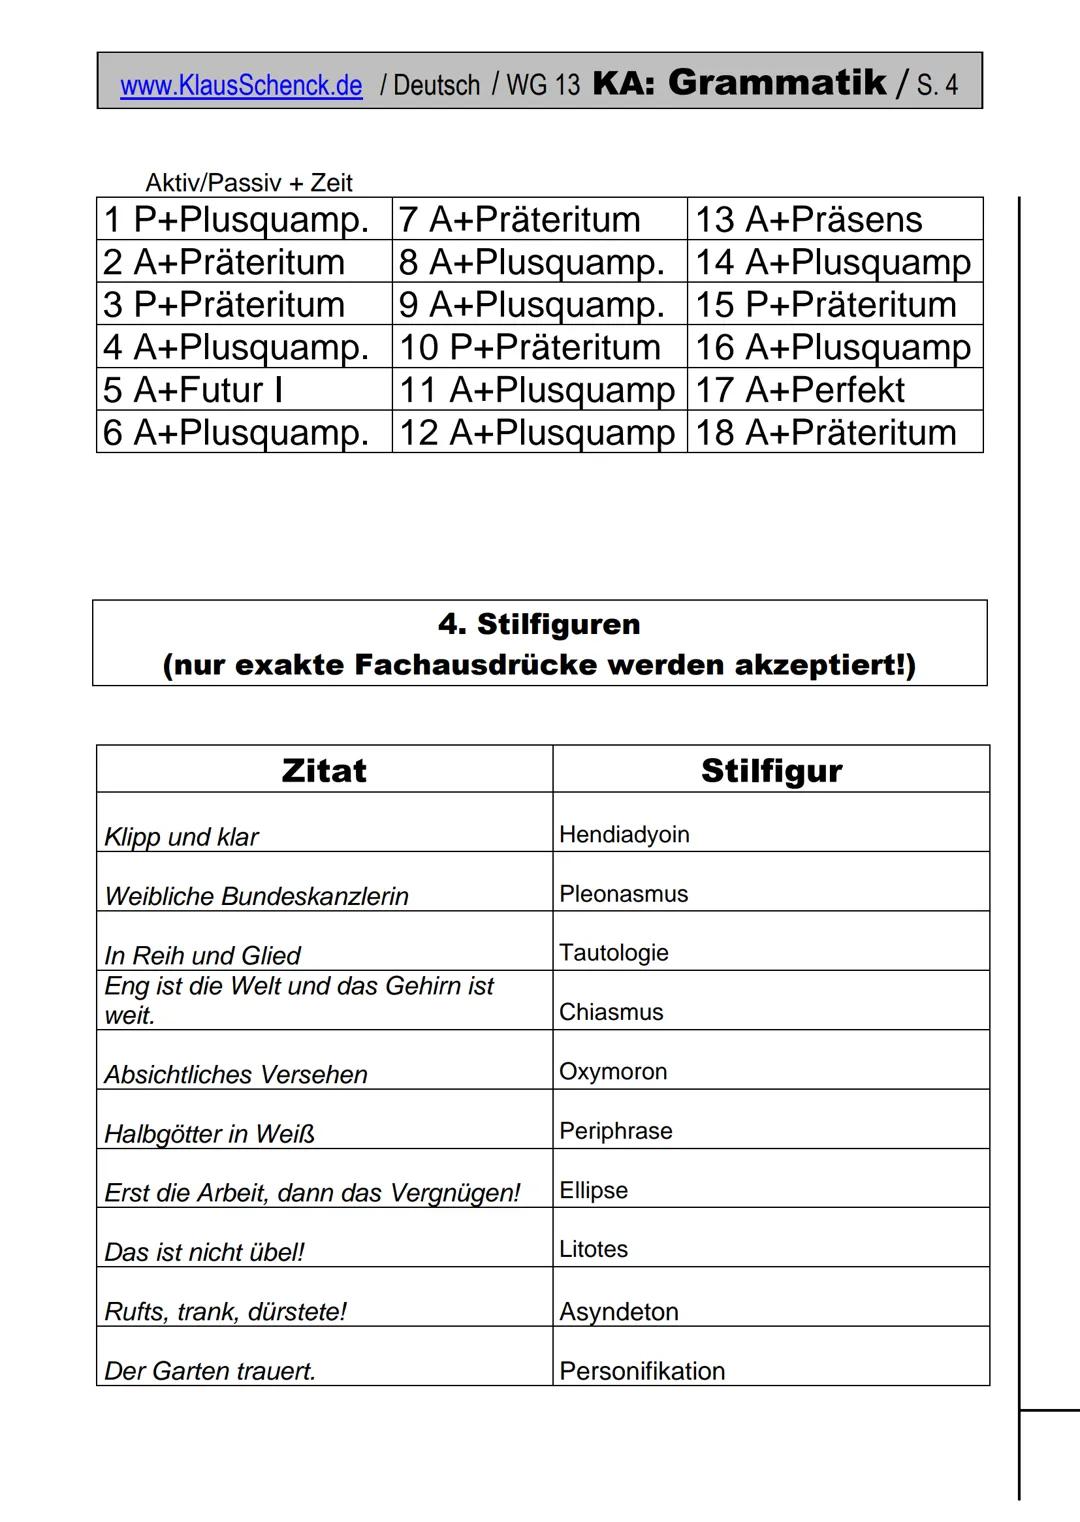 www.KlausSchenck.de / Deutsch / WG 13 KA: Grammatik / S. 1
(Deutsch/Grammatik/KAWortZeit-WG13-17)
Klasse: WG 13
Fehlerzahl:
Name:
Durchschni